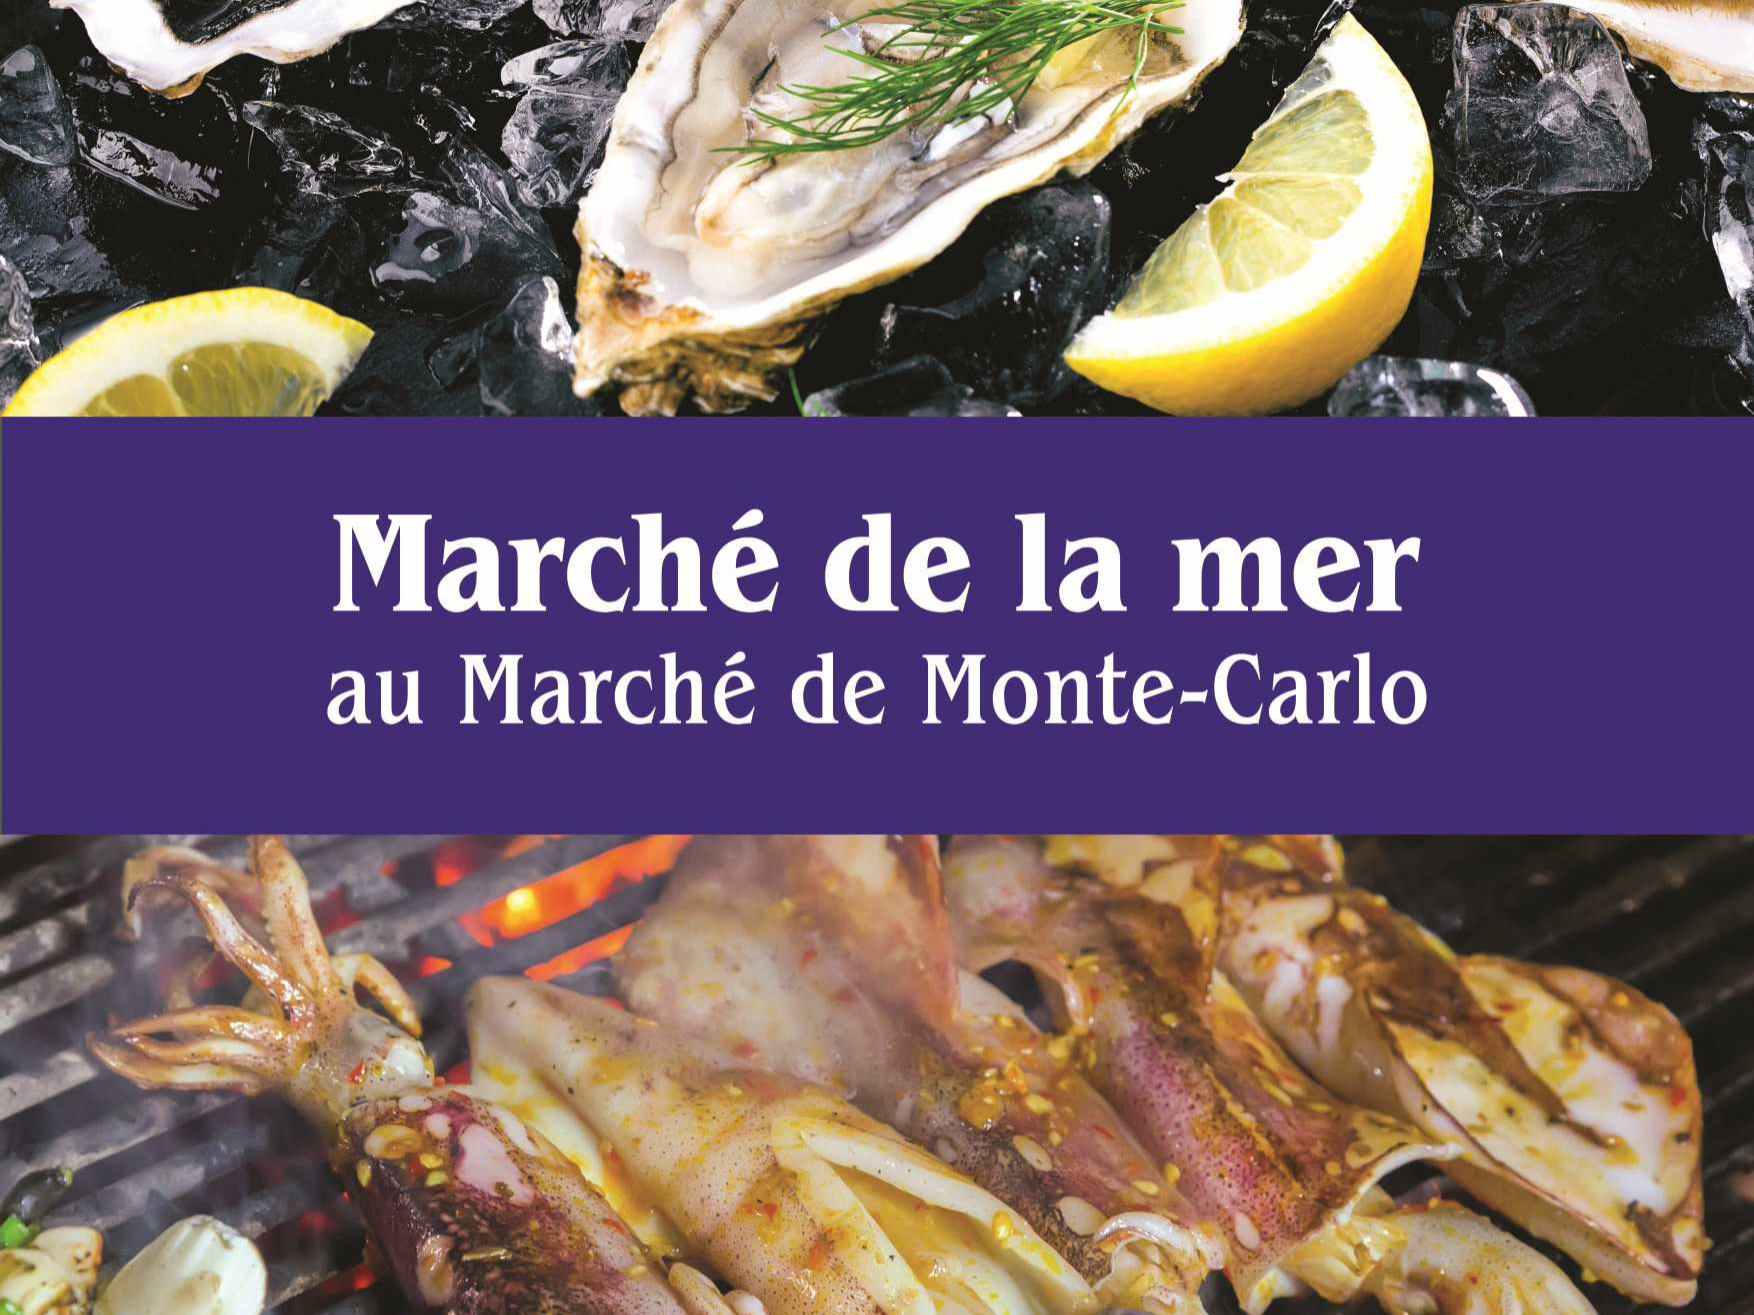 Marché de la mer au Marché de Monte-Carlo